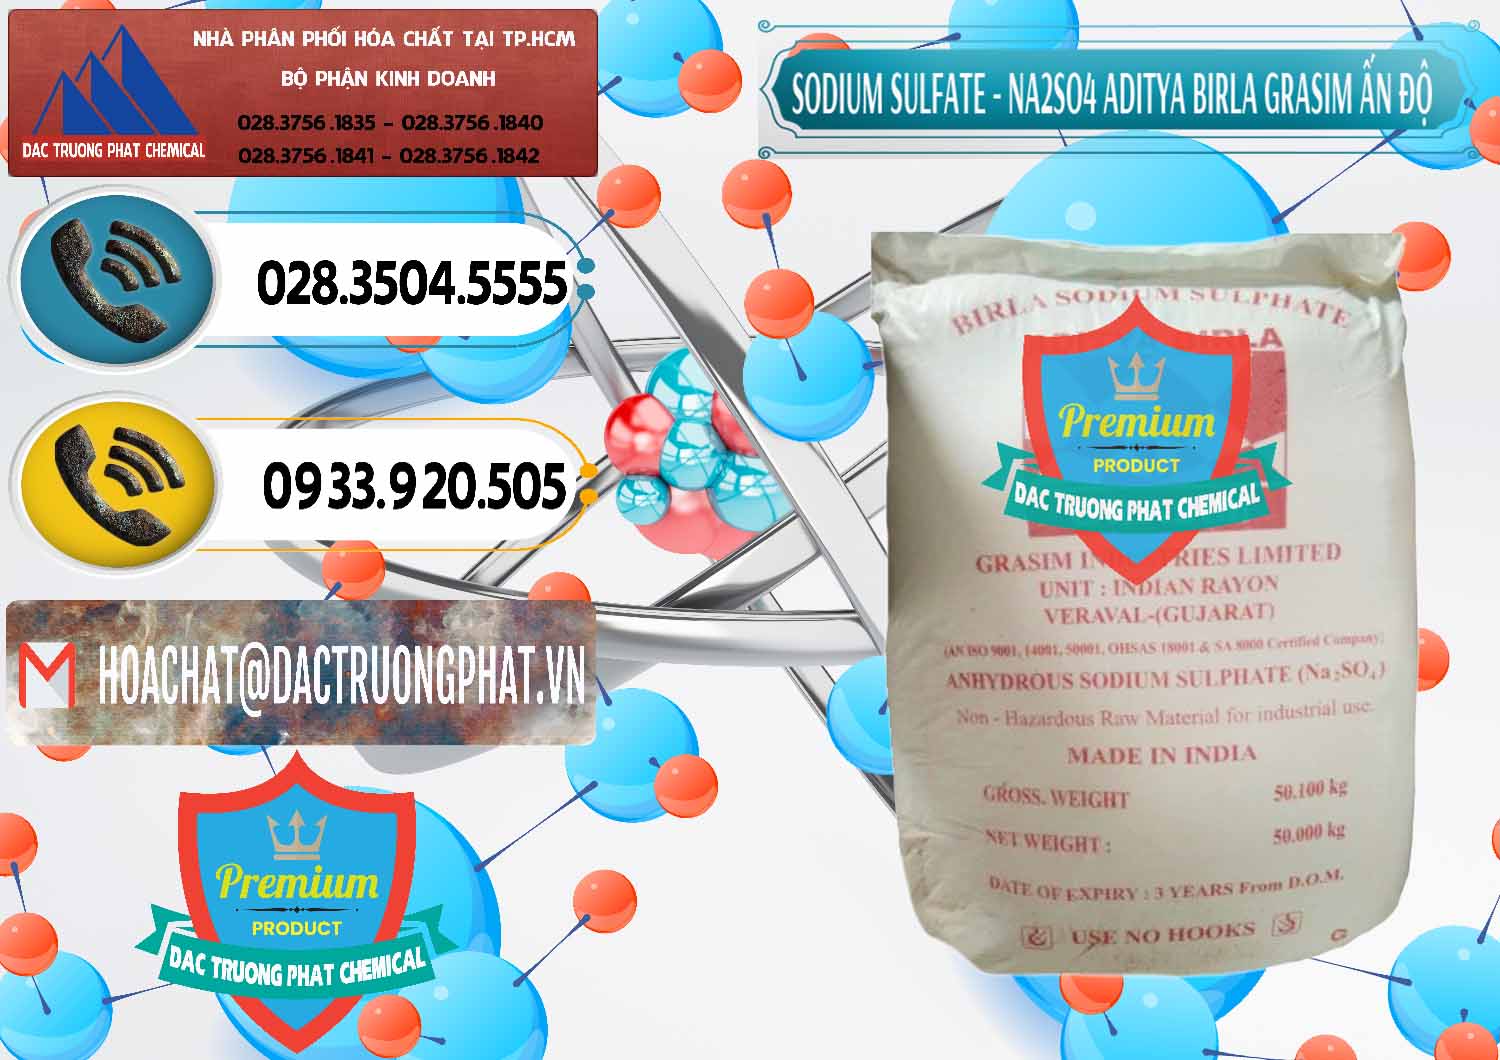 Công ty bán & phân phối Sodium Sulphate - Muối Sunfat Na2SO4 Grasim Ấn Độ India - 0356 - Đơn vị phân phối & cung cấp hóa chất tại TP.HCM - hoachatdetnhuom.vn